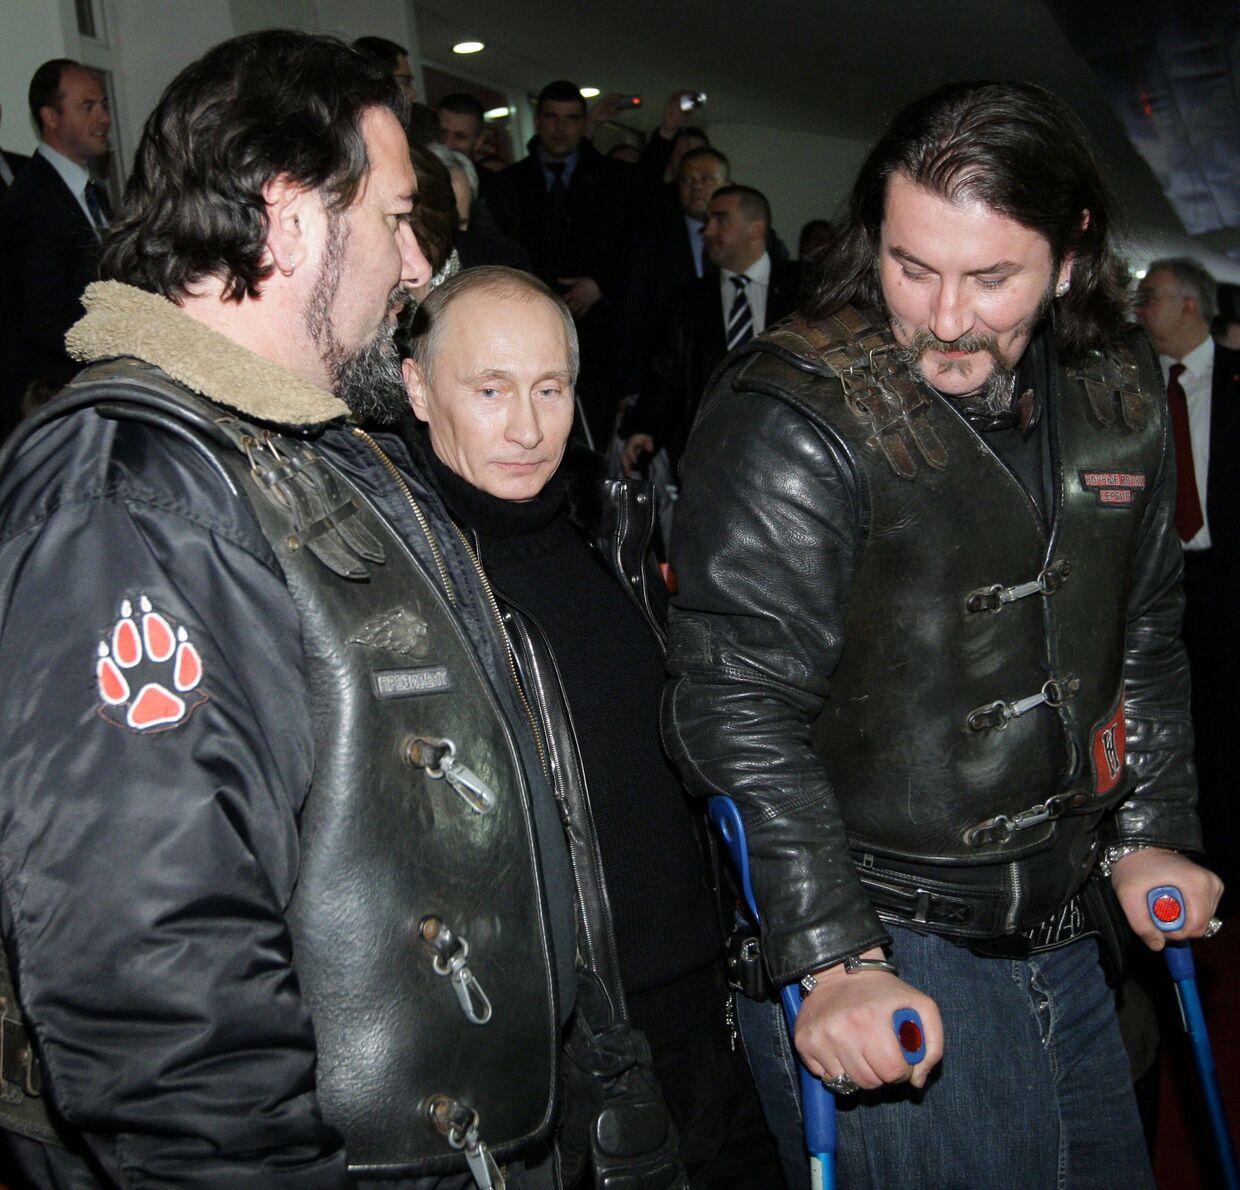 В.Путин встретился с представителями байкерского движения Ночные волки и посмотрел вместе с ними товарищеский матч